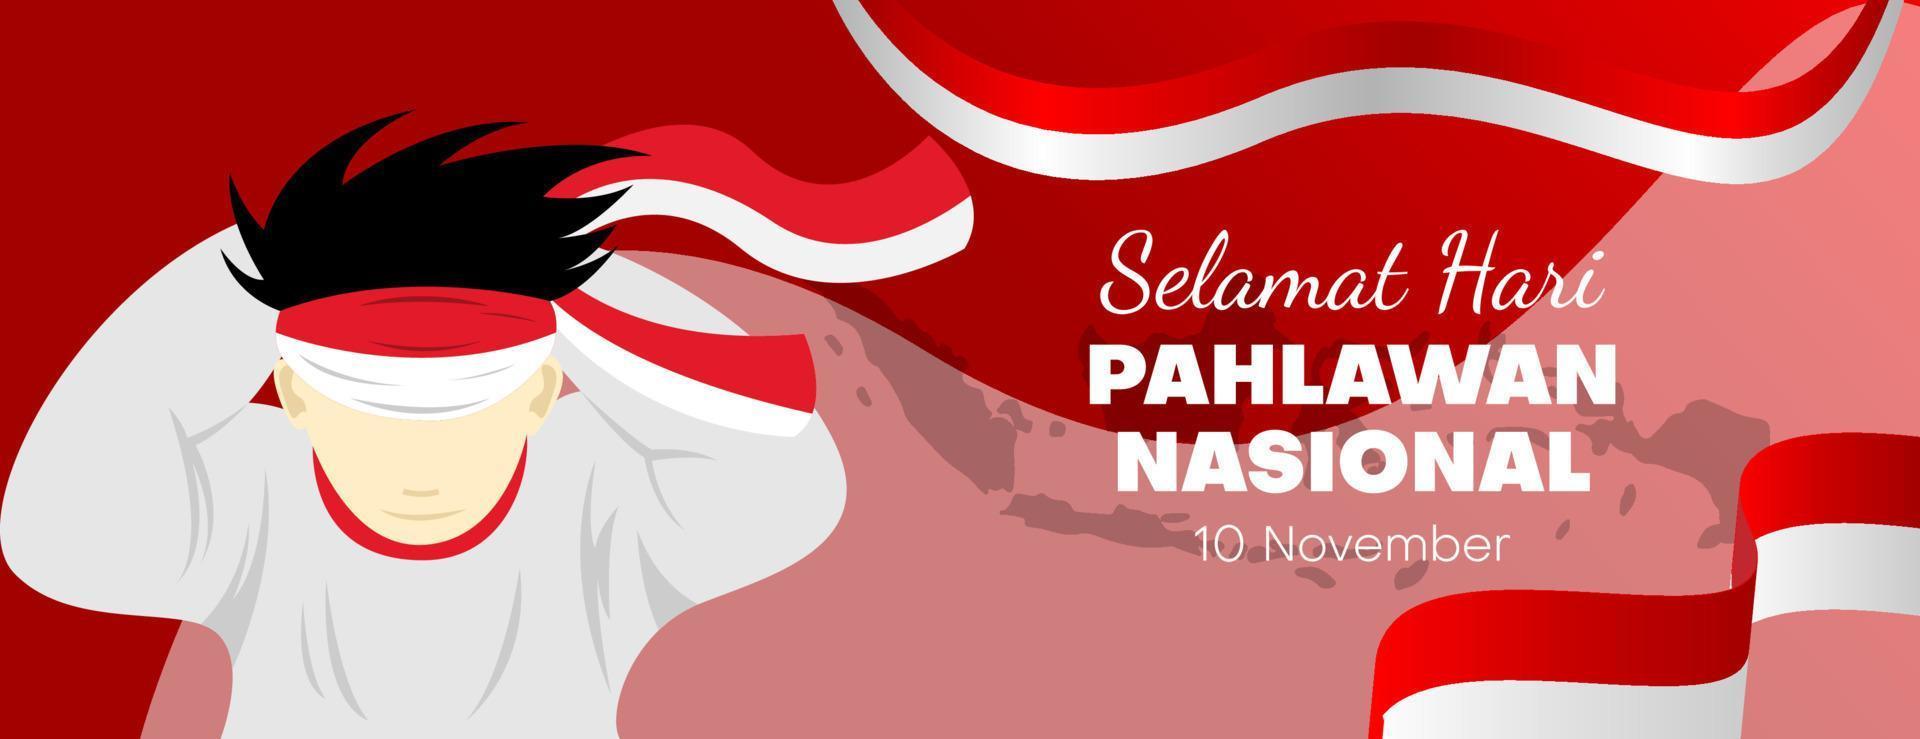 fondo del día del héroe nacional o indonesio de hari pahlawan para pancarta, afiche, tarjeta de felicitación o sitio web con la ilustración de una persona que se ata la cabeza con un paño rojo y blanco vector